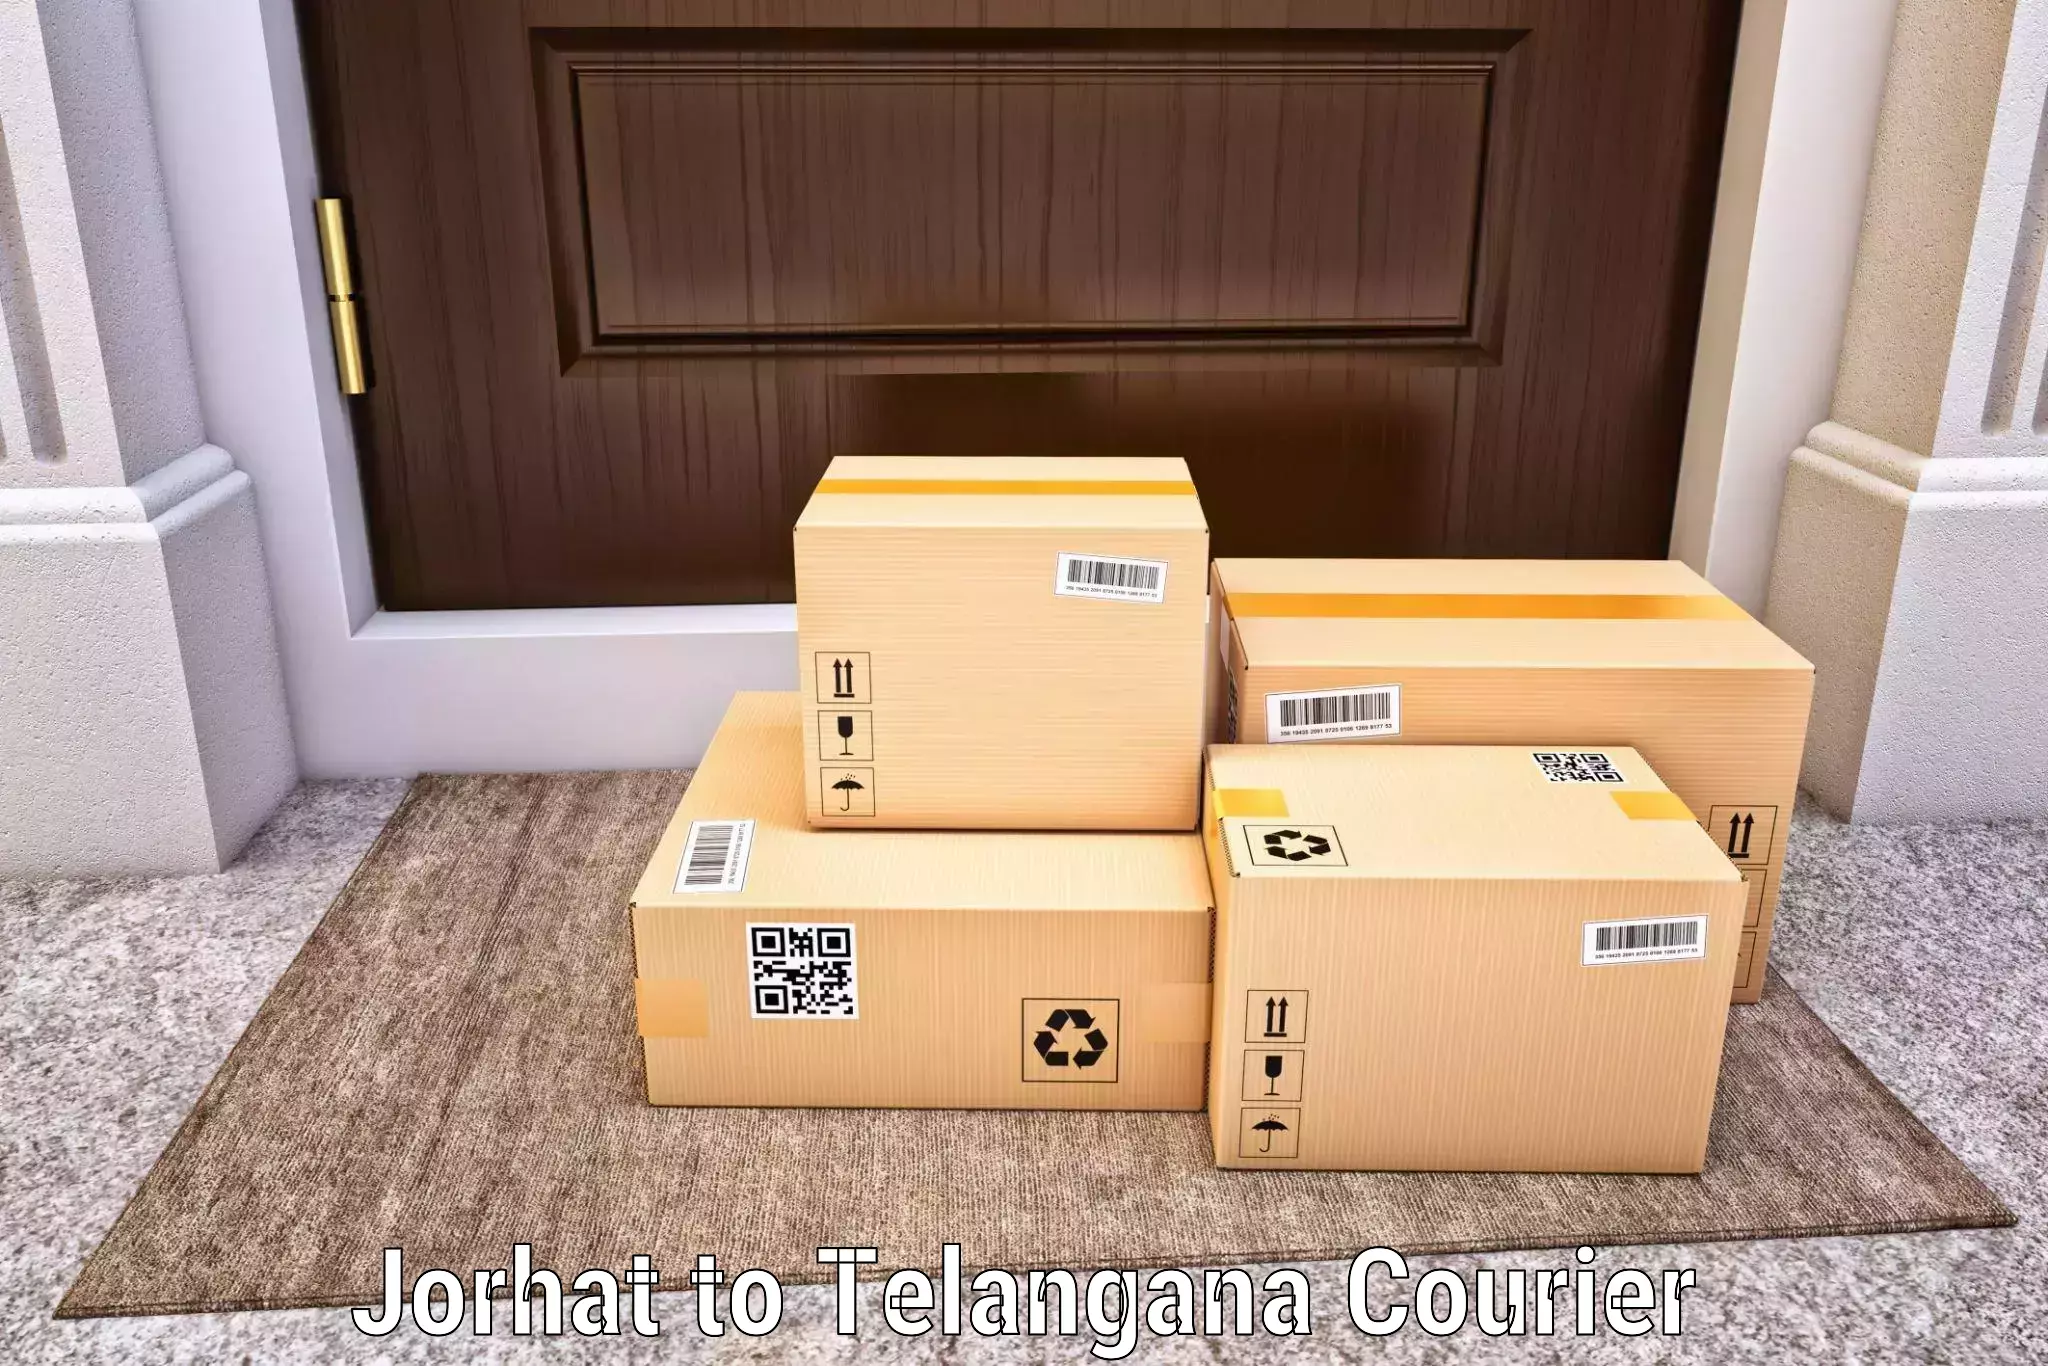 Expedited parcel delivery Jorhat to Shamshabad